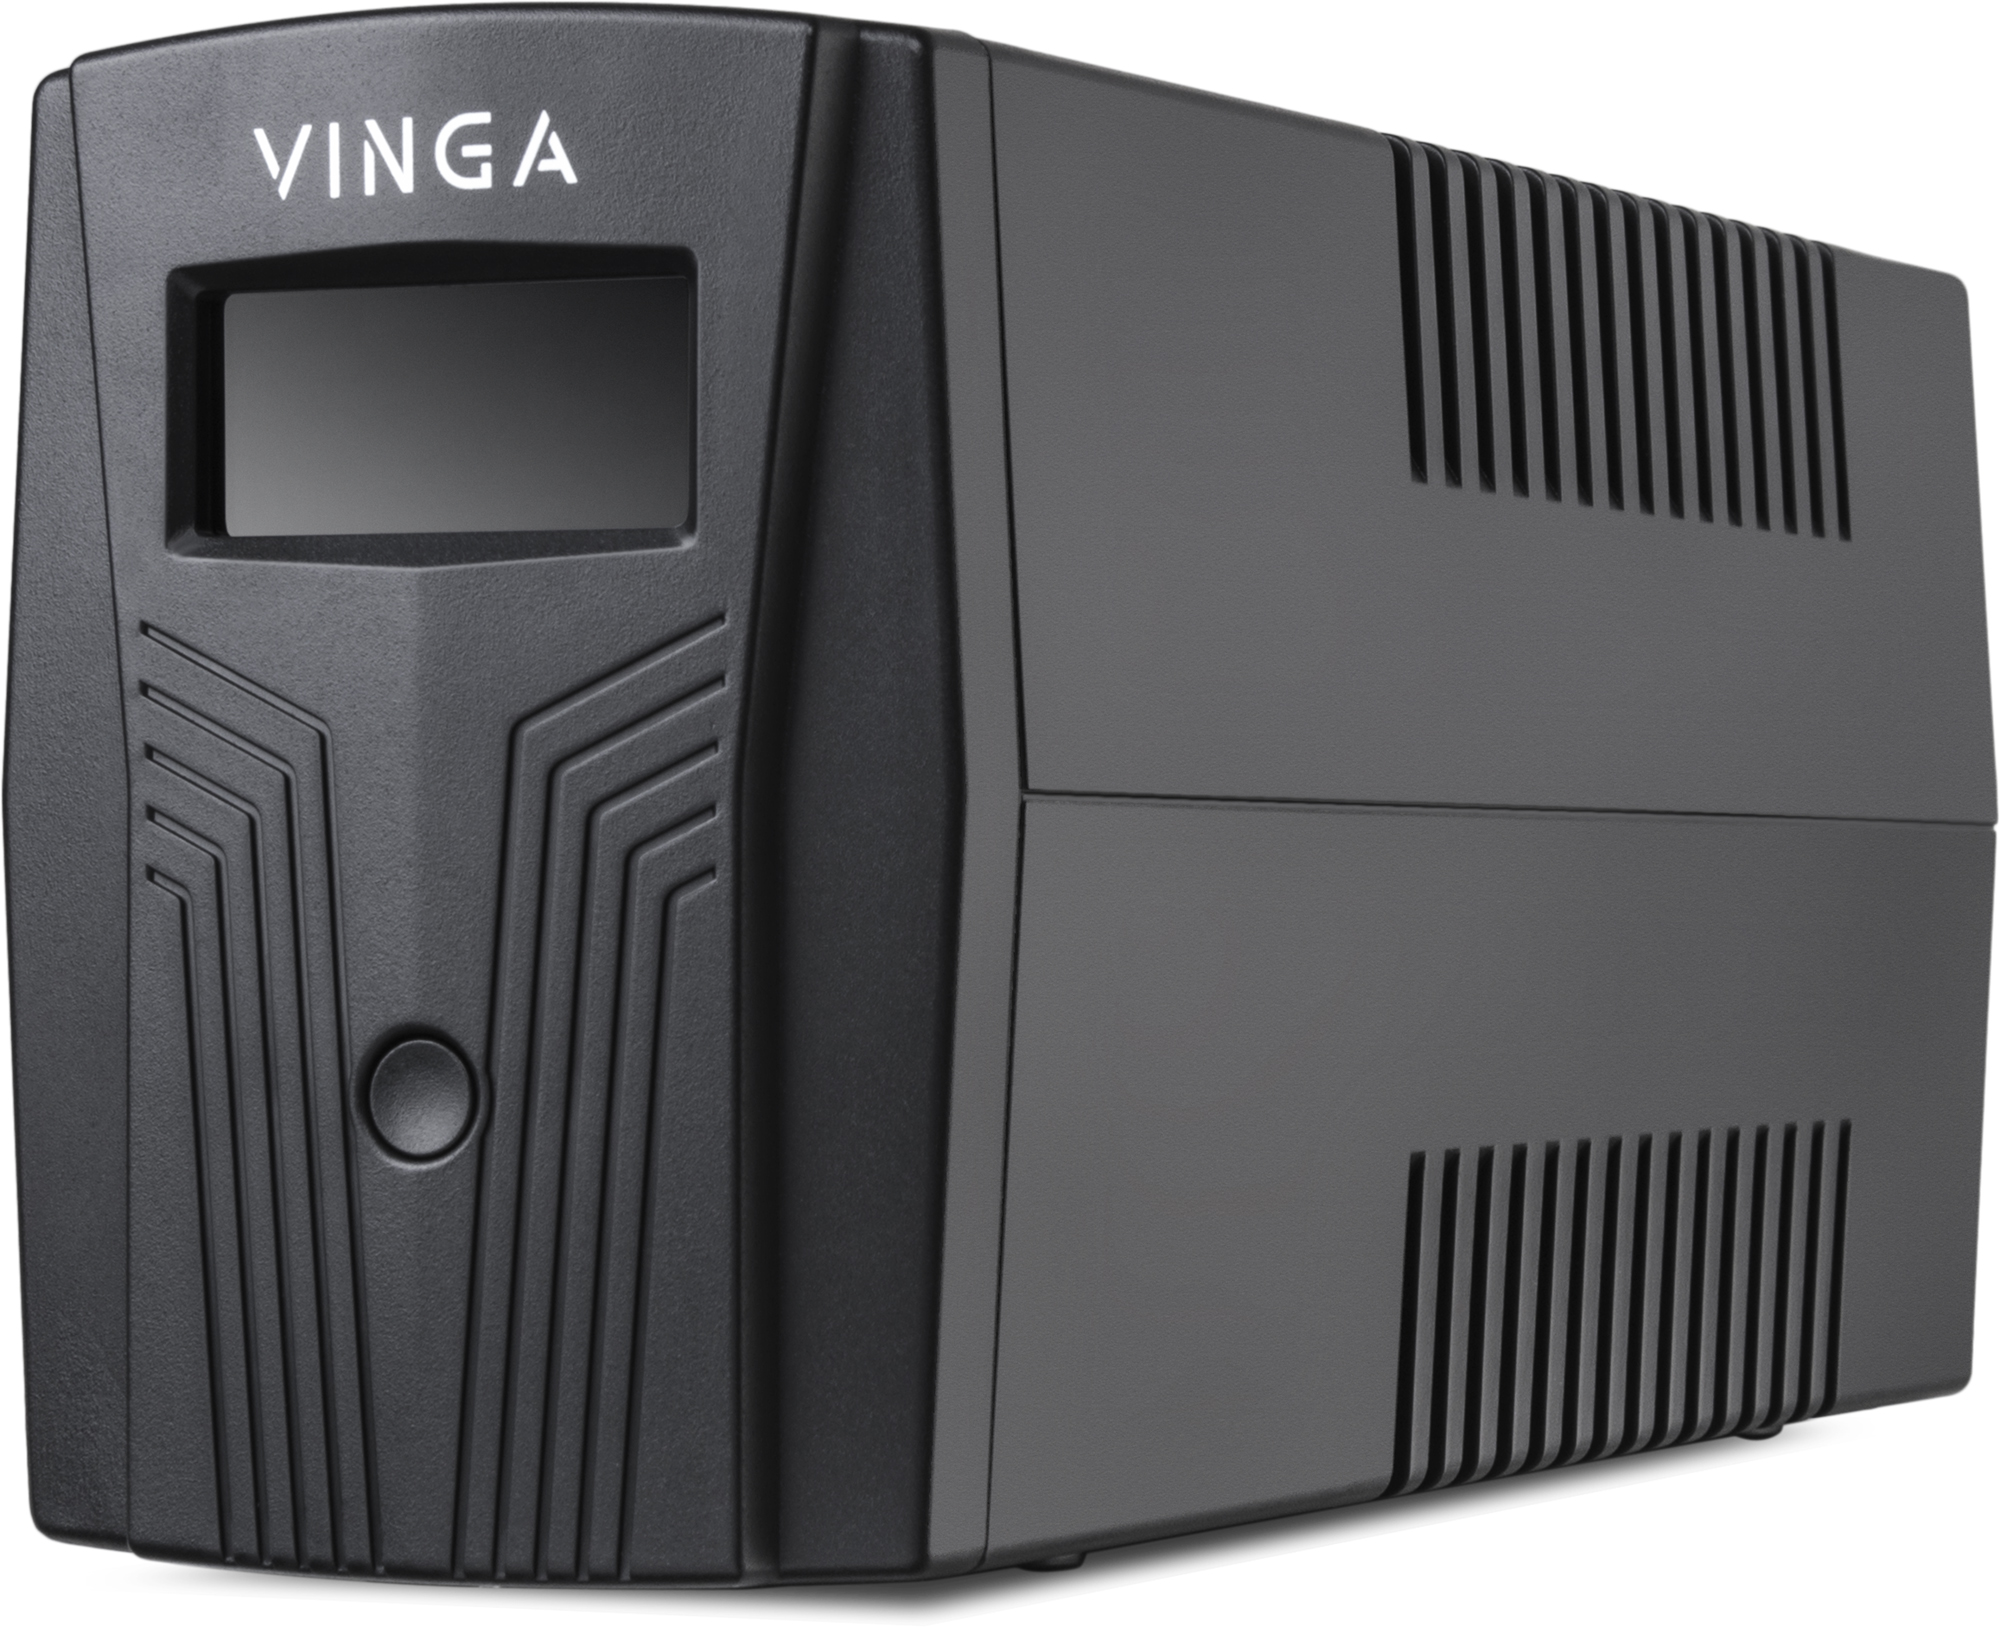 Источник бесперебойного питания Vinga LCD 1200VA (VPC-1200P) характеристики - фотография 7